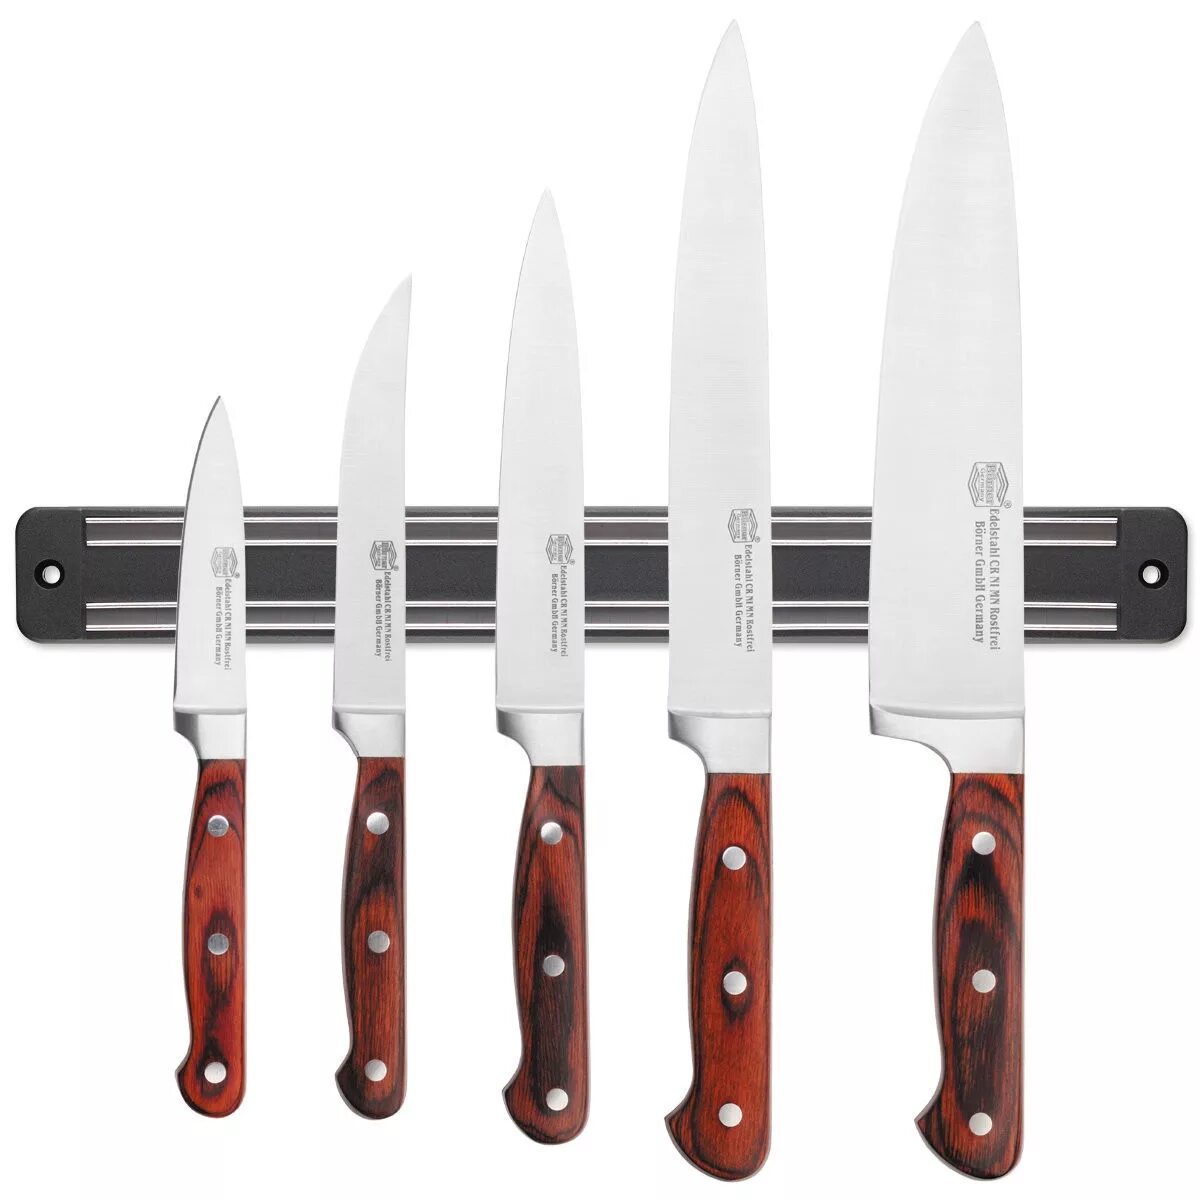 Недорогие кухонные ножи. Набор ножей Borner. Бёрнер ножи кухонные. Ножи Бернер Виенна. Ножи бёрнер Германия.